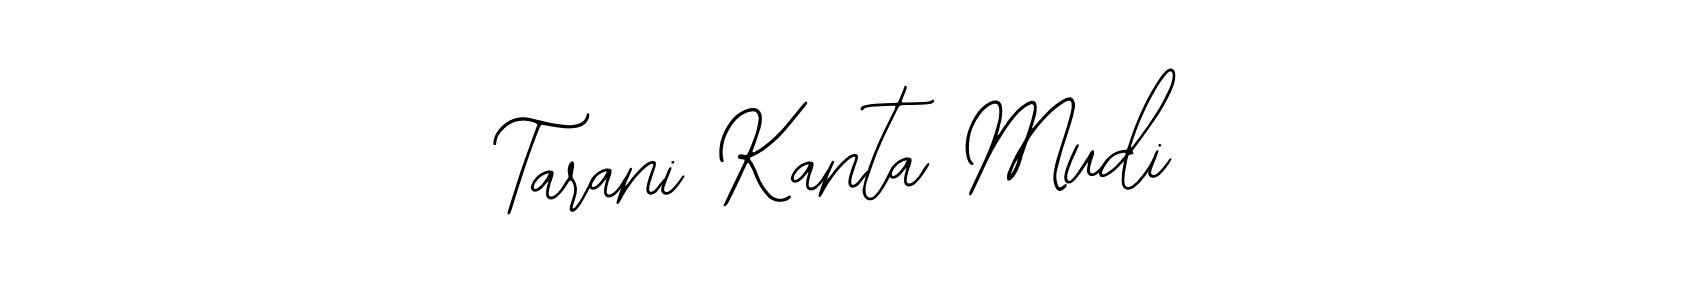 How to make Tarani Kanta Mudi signature? Bearetta-2O07w is a professional autograph style. Create handwritten signature for Tarani Kanta Mudi name. Tarani Kanta Mudi signature style 12 images and pictures png